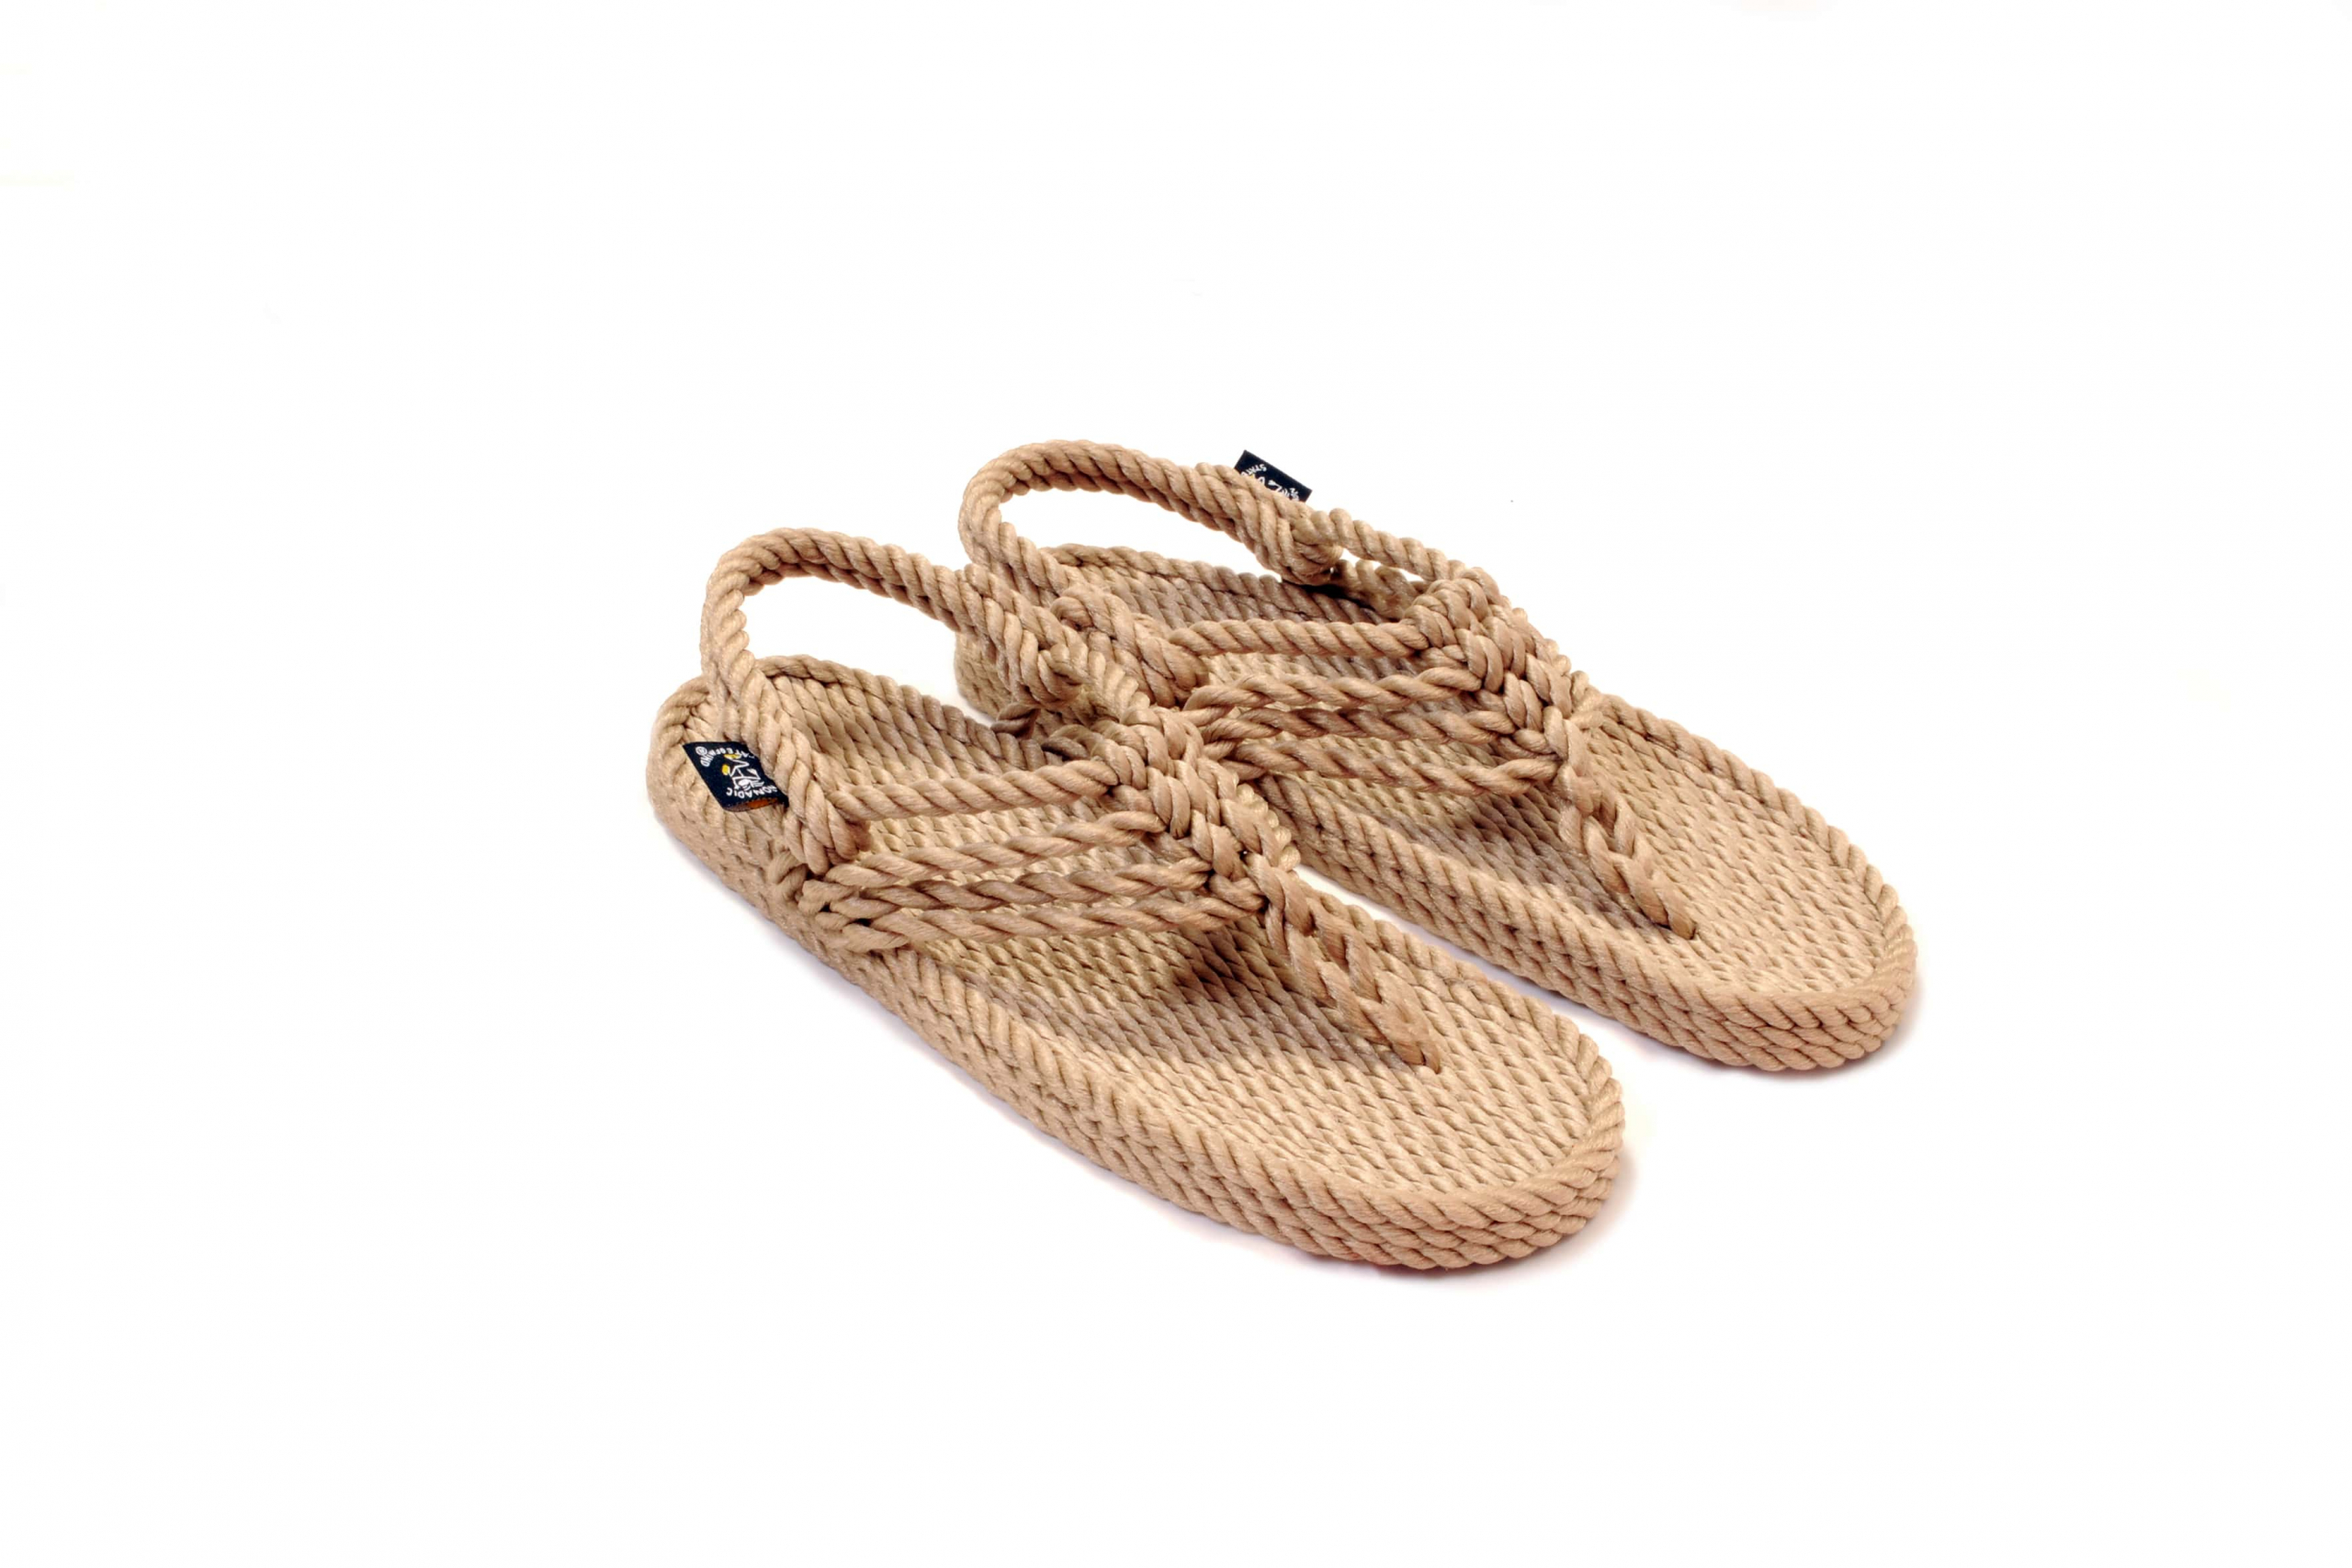 Sandales en corde, sandales boho, nomadic state of mind, Sandals for women, modèle Jester beige